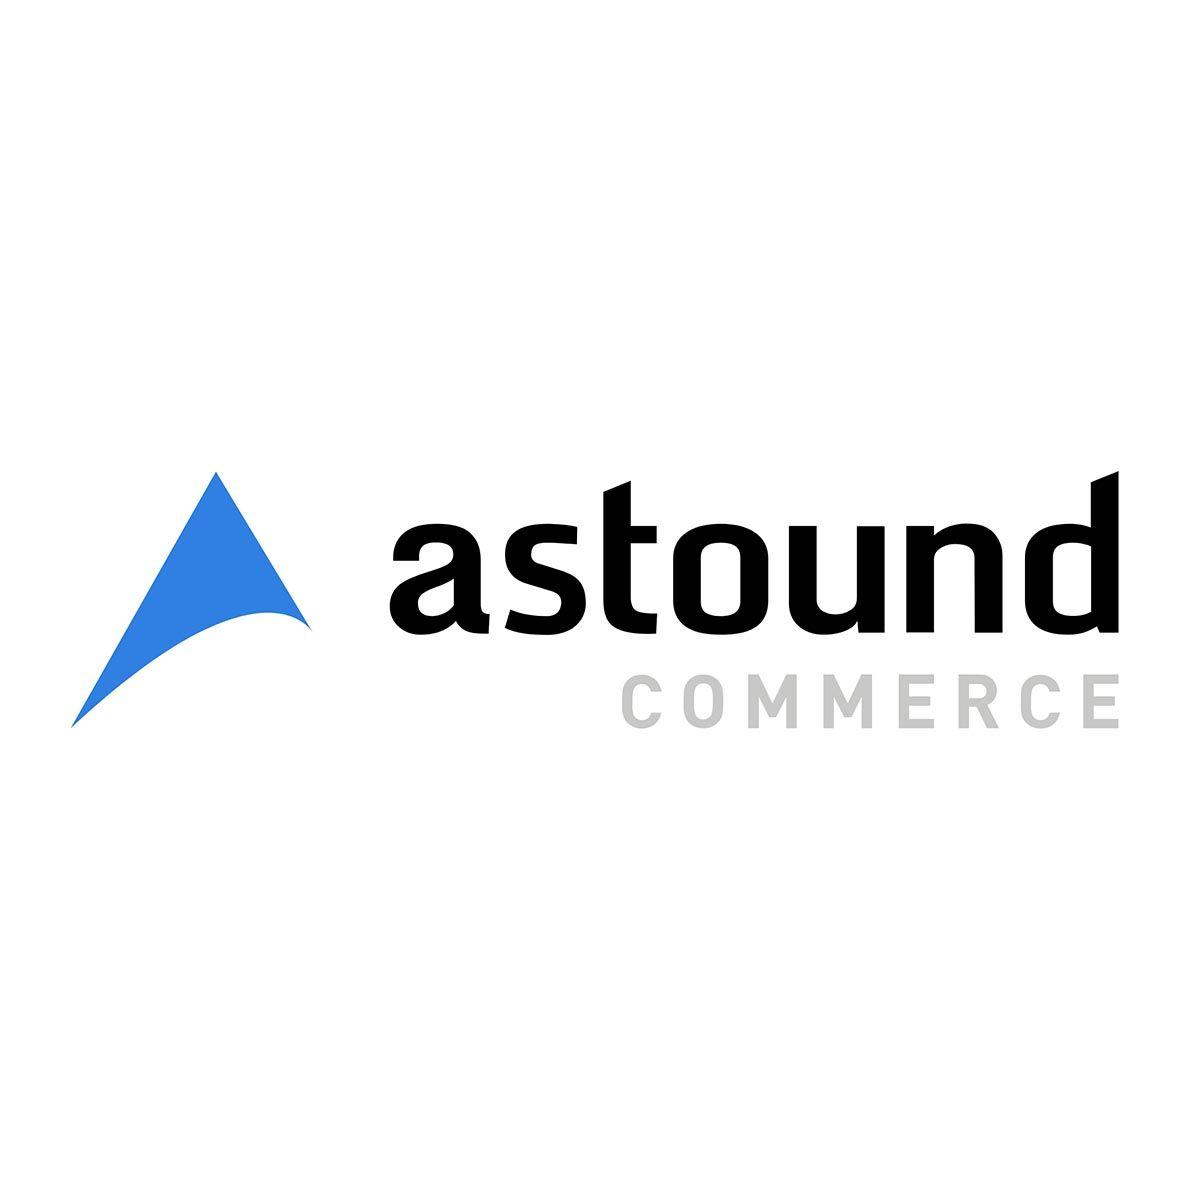 Commerce Logo - Home - Astound Commerce